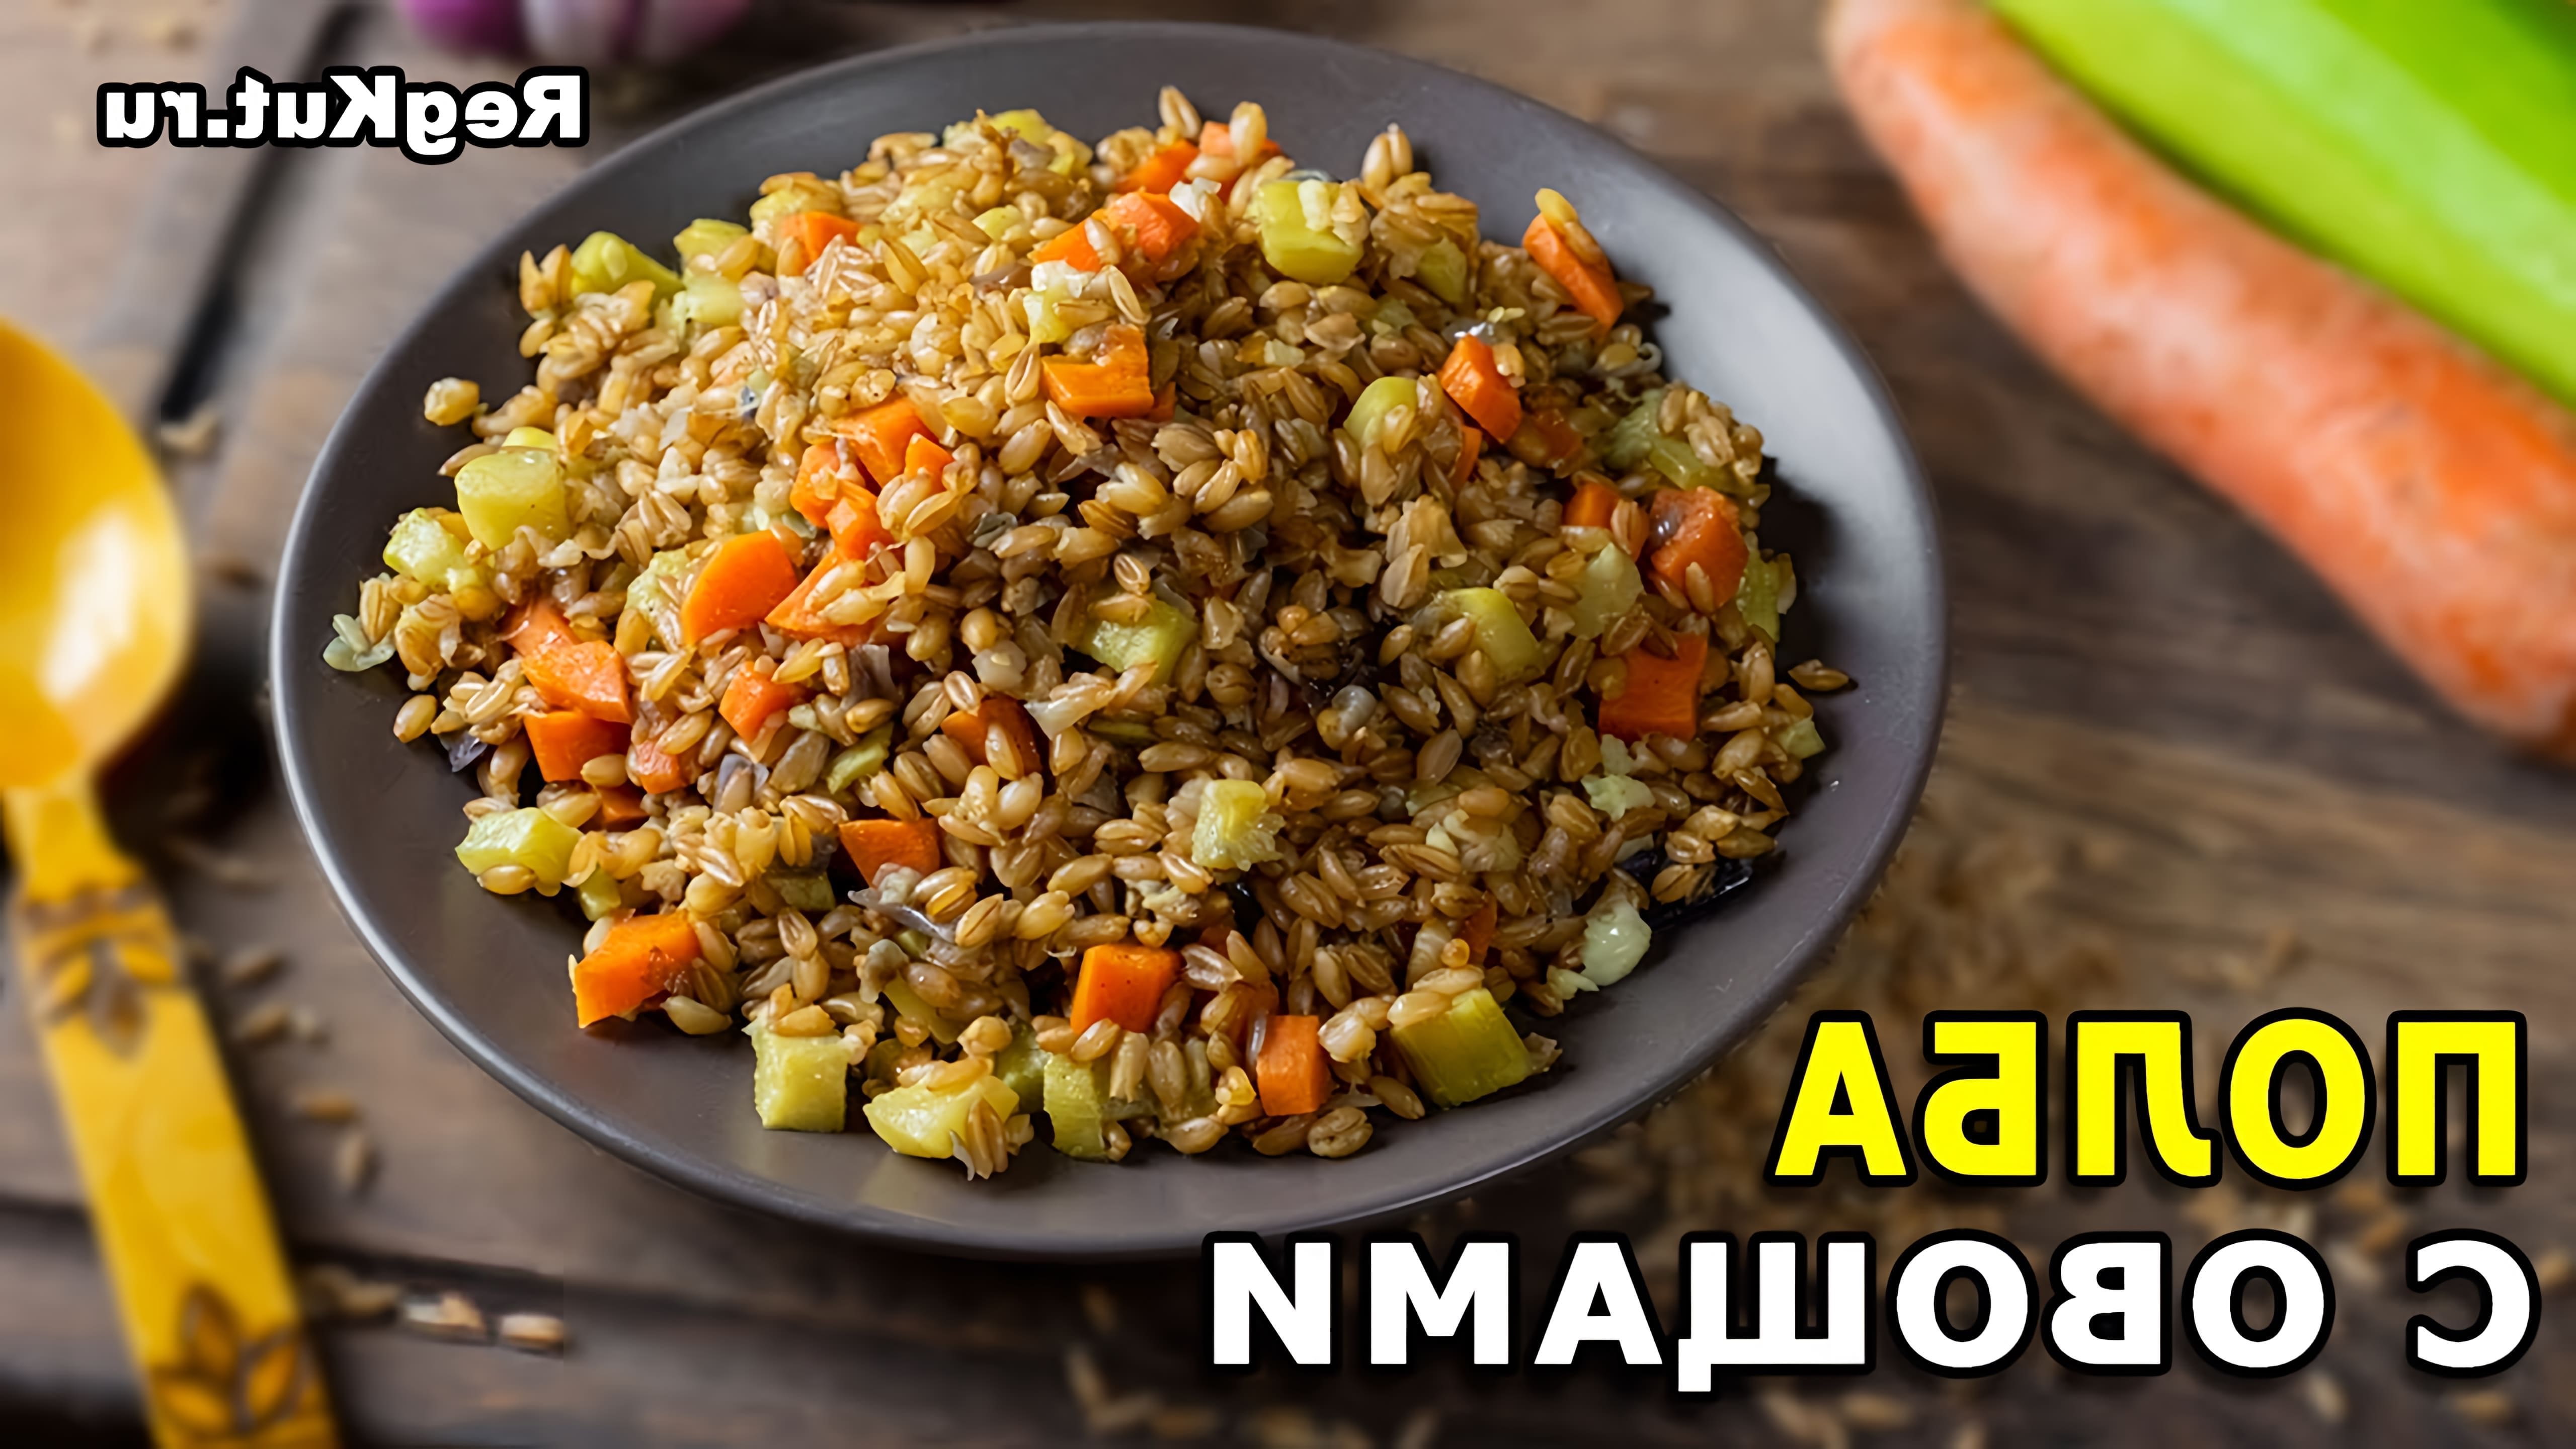 В этом видео Регина Кутимская делится рецептом полбы с овощами, который является простым и вкусным вегетарианским блюдом